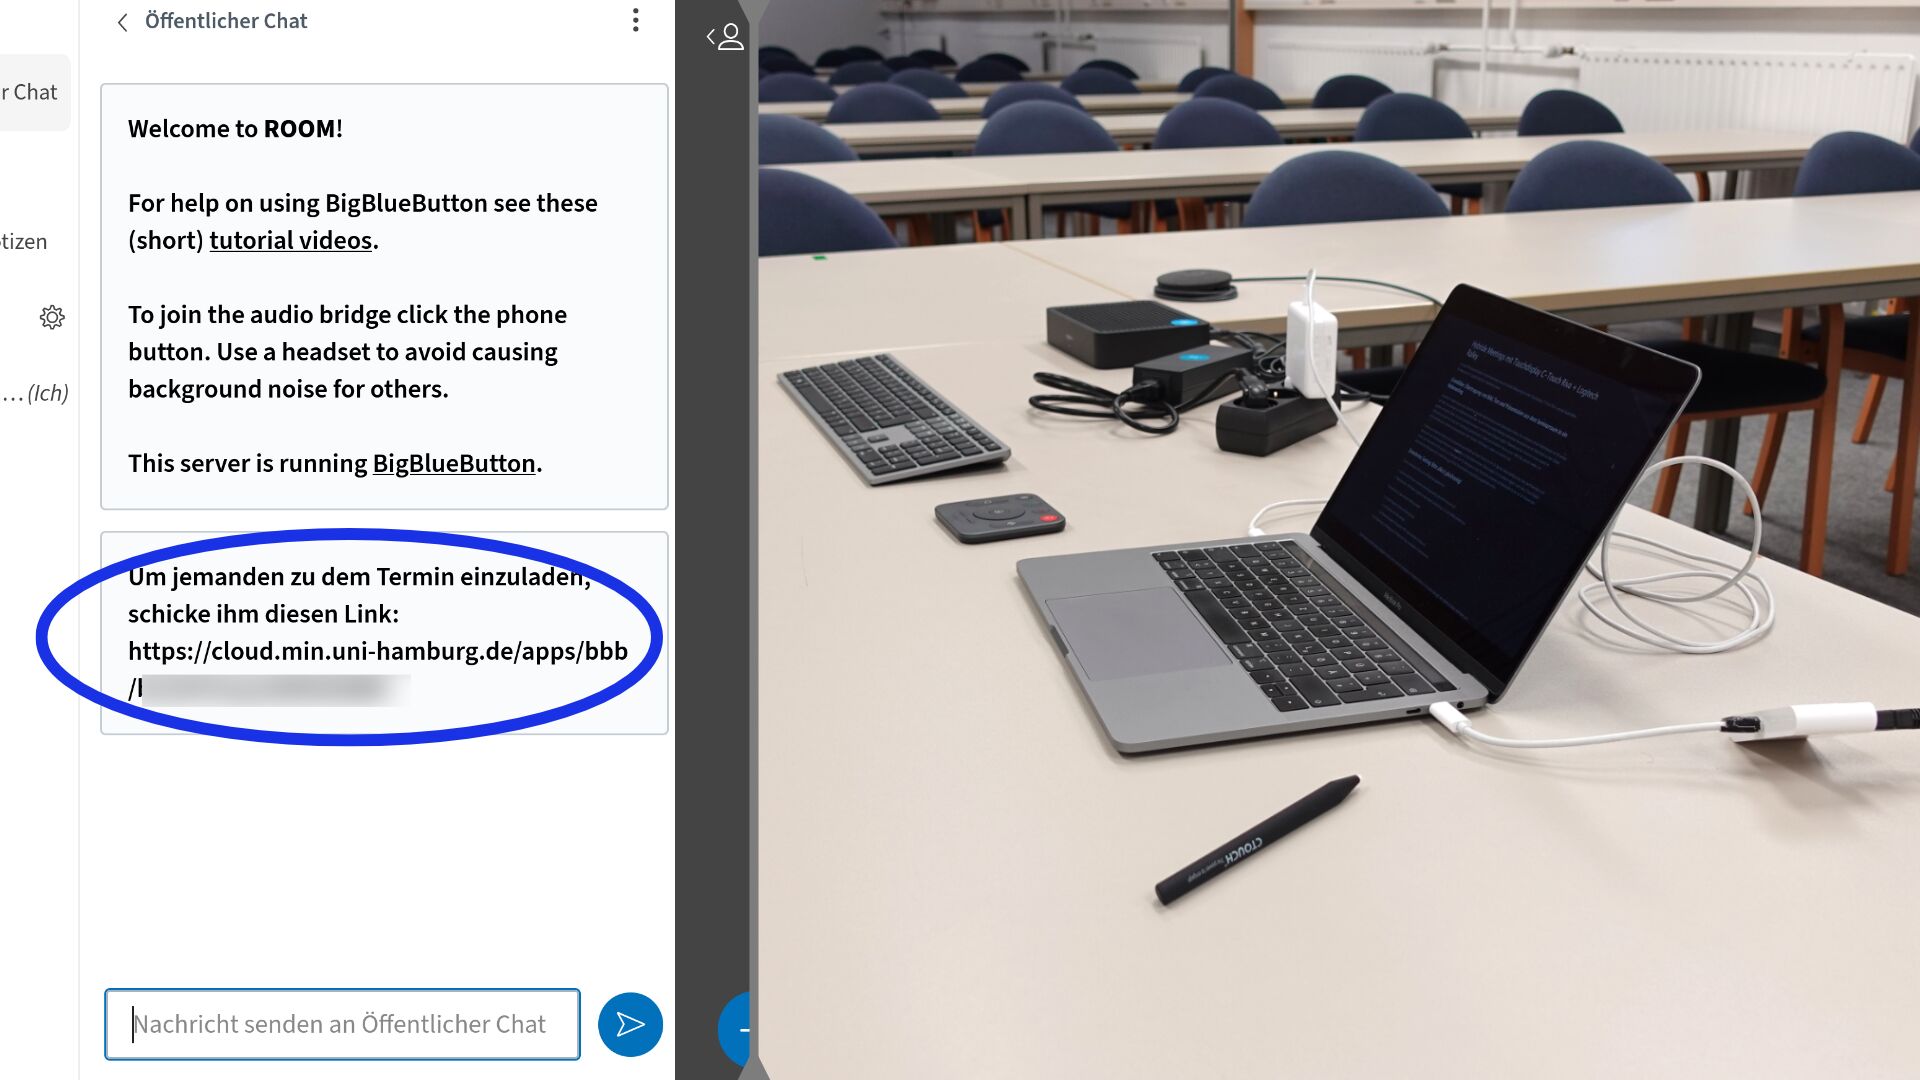 Bildstrecke mit zwei Bildern: Screenshot eines Webmeetings, der Link zum Meeting ist markiert. Daneben das Foto des angeschlossenen Präsentationsrechners auf dem Tisch.